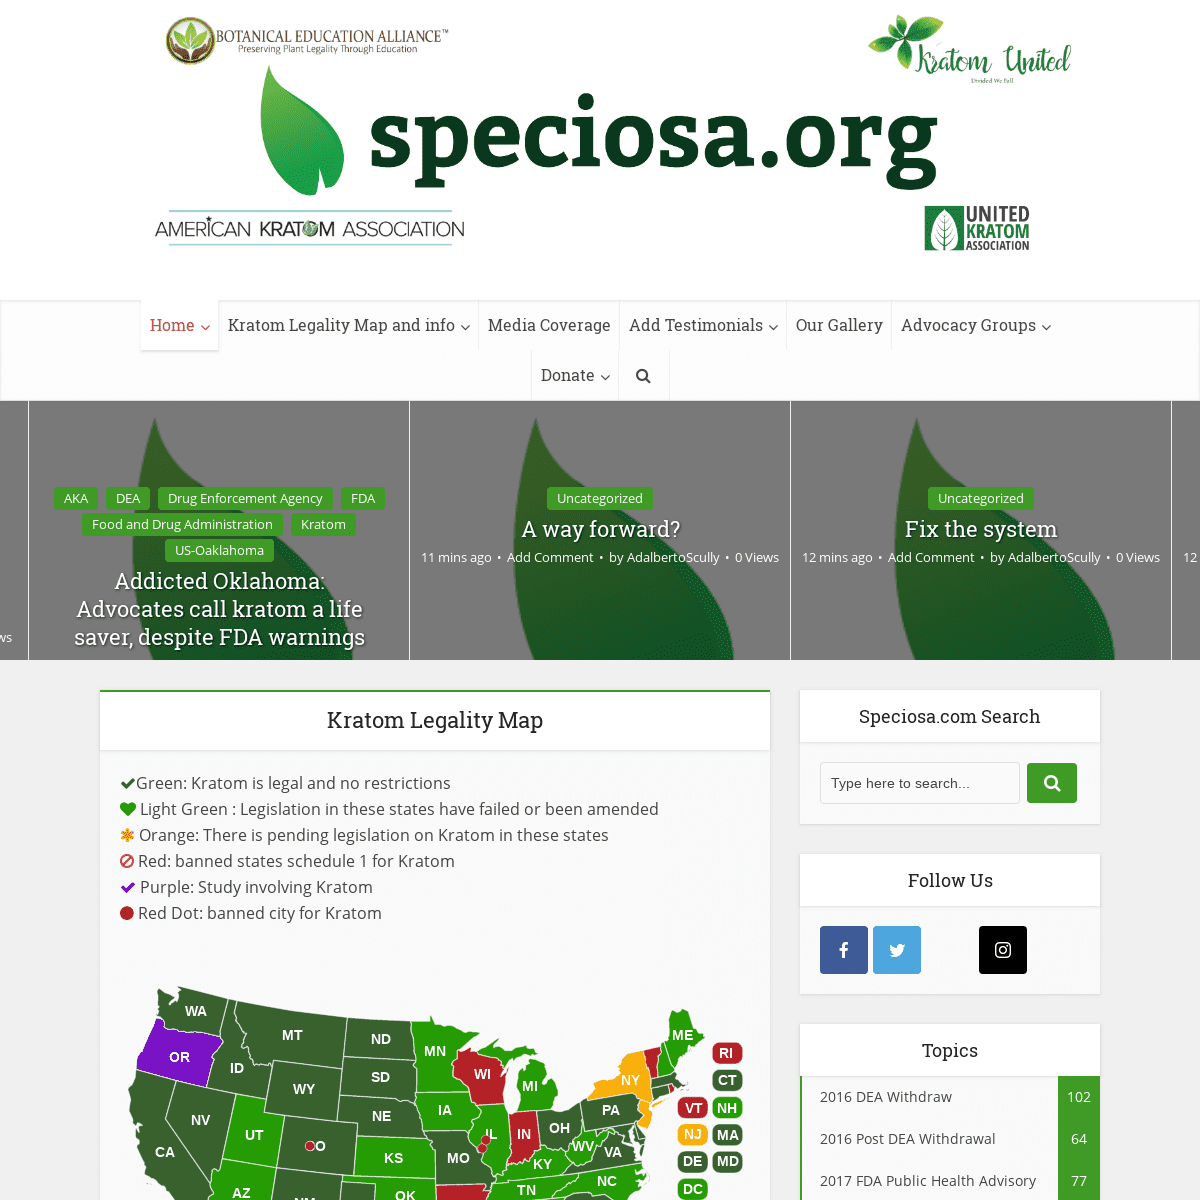 Speciosa.org